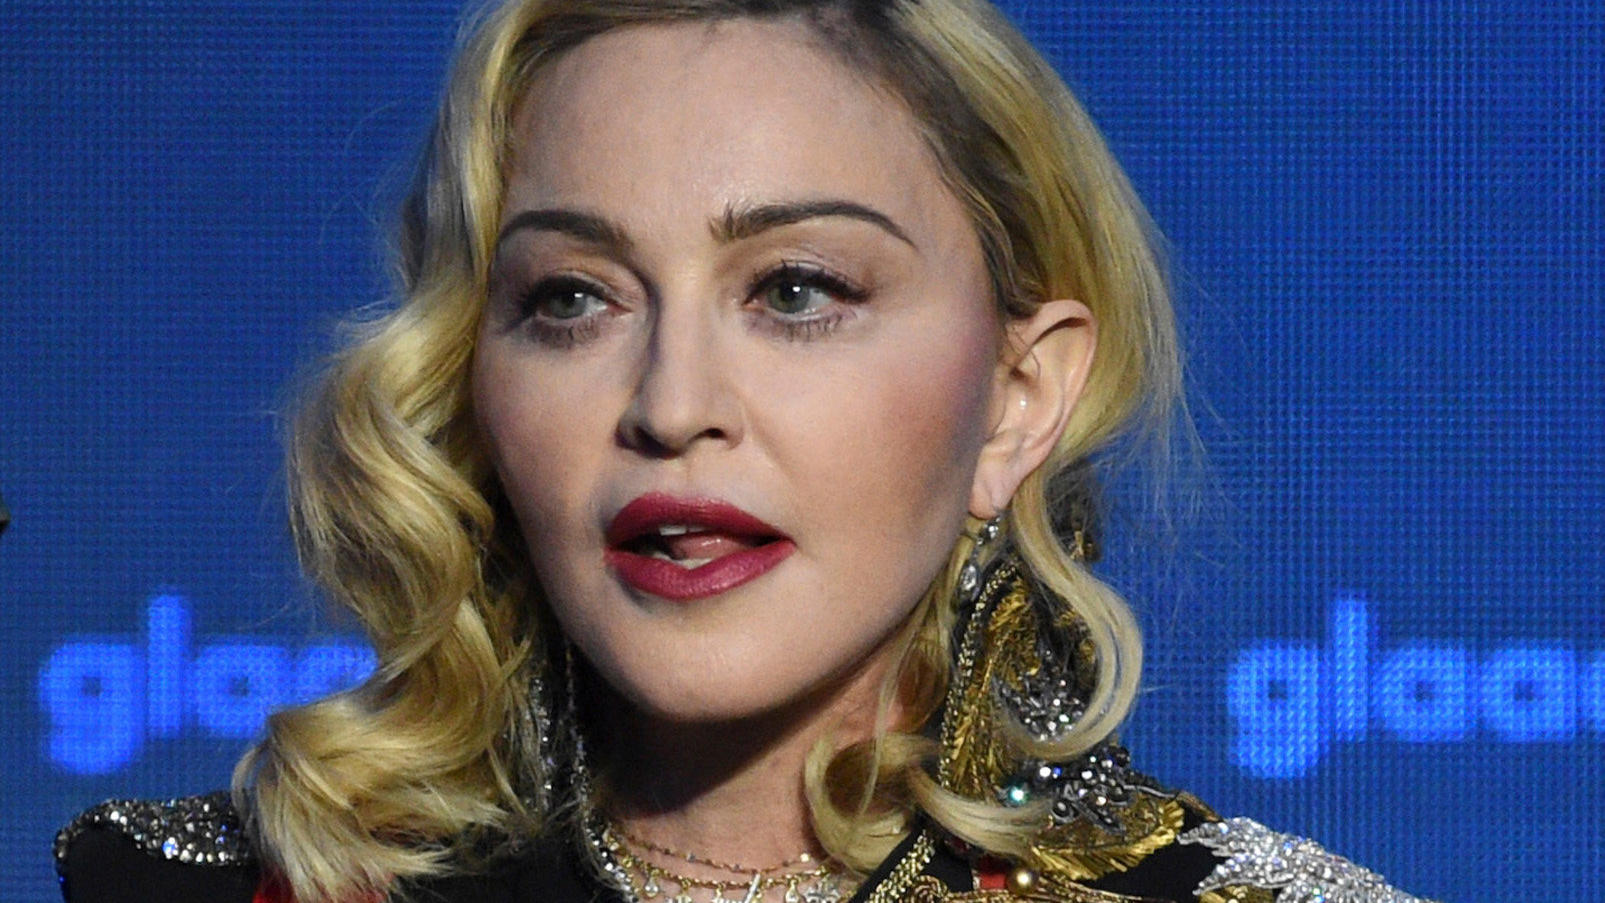 Sängerin Madonna zeigt sich bei Instagram gerne freizügig.